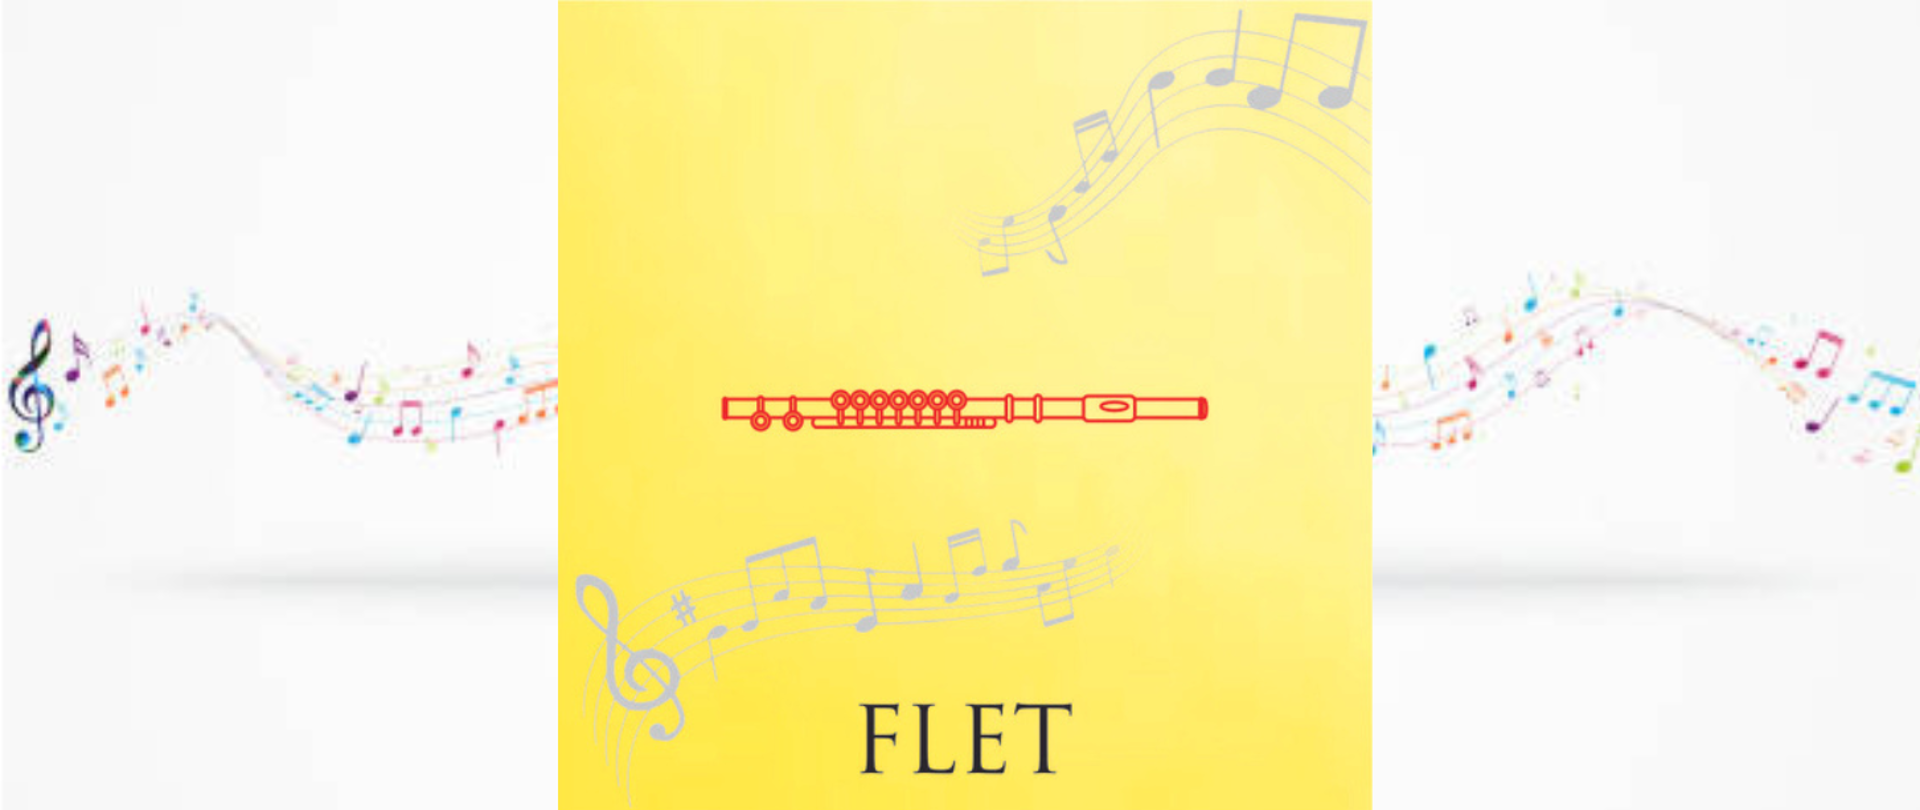 grafika przedstawiająca flet na tle nut , pod grafiką instrumentu napis flet